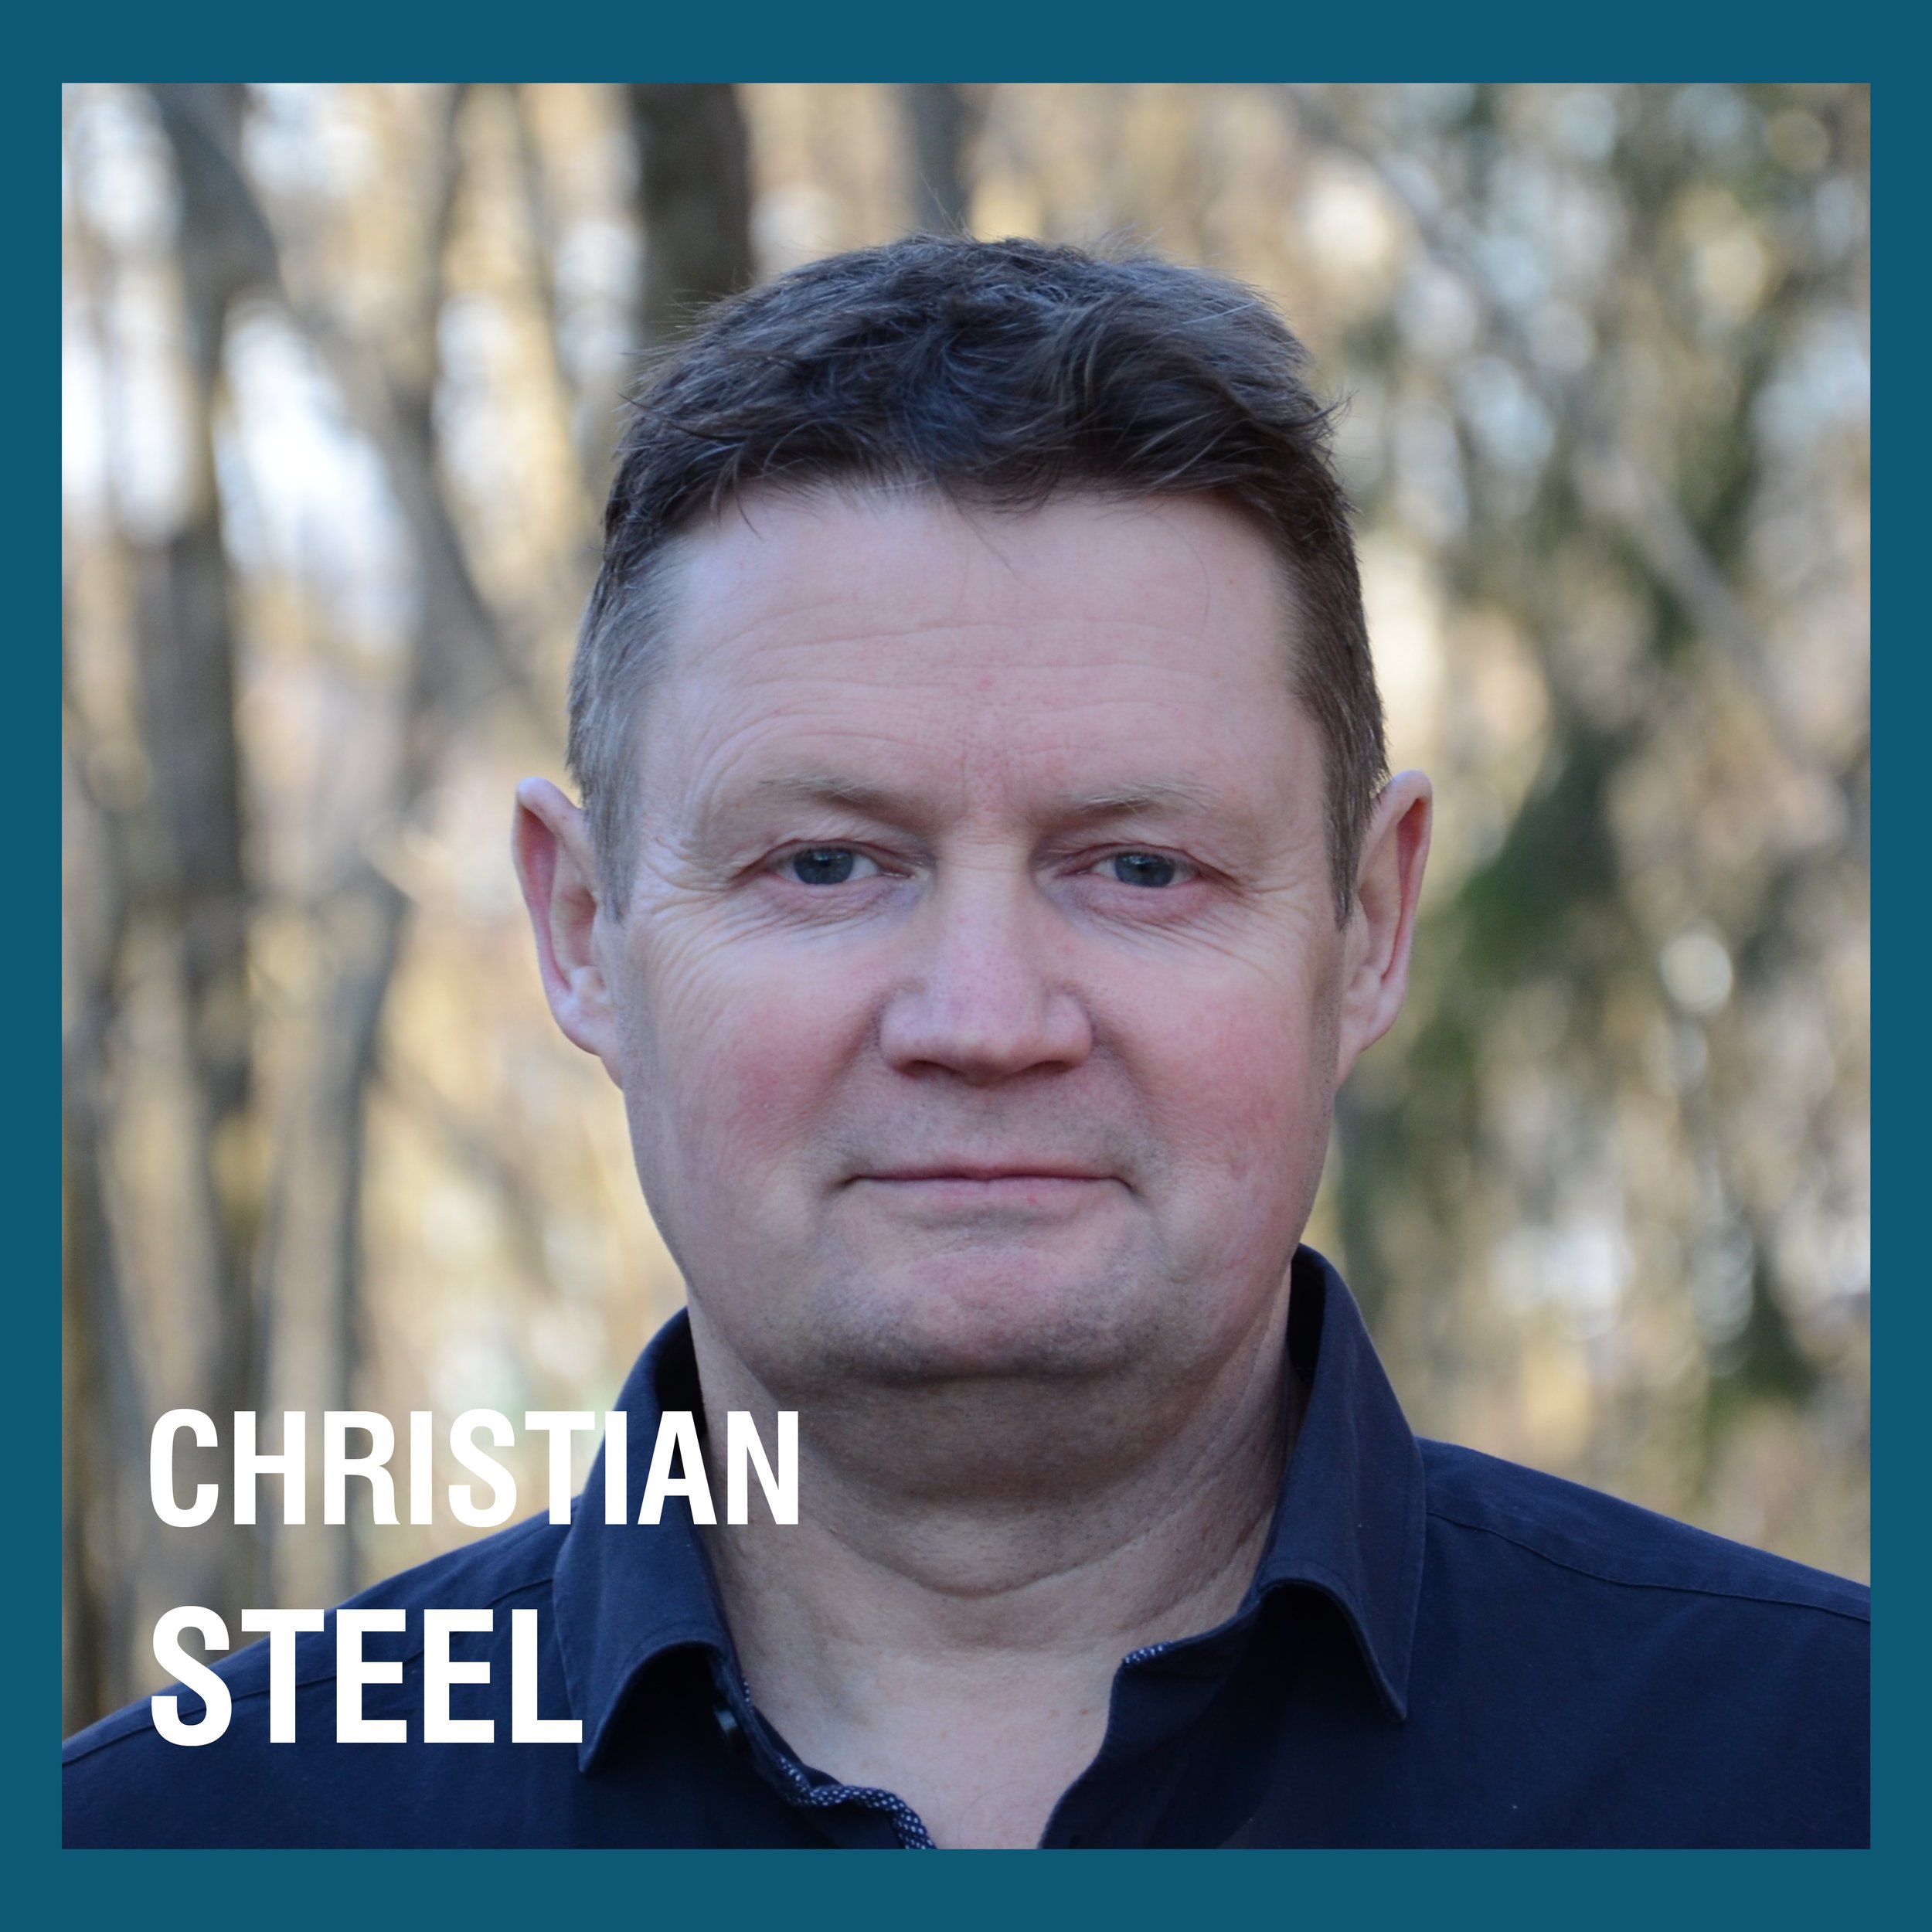 Christian Steel uten logo SoMe kampanje.jpg